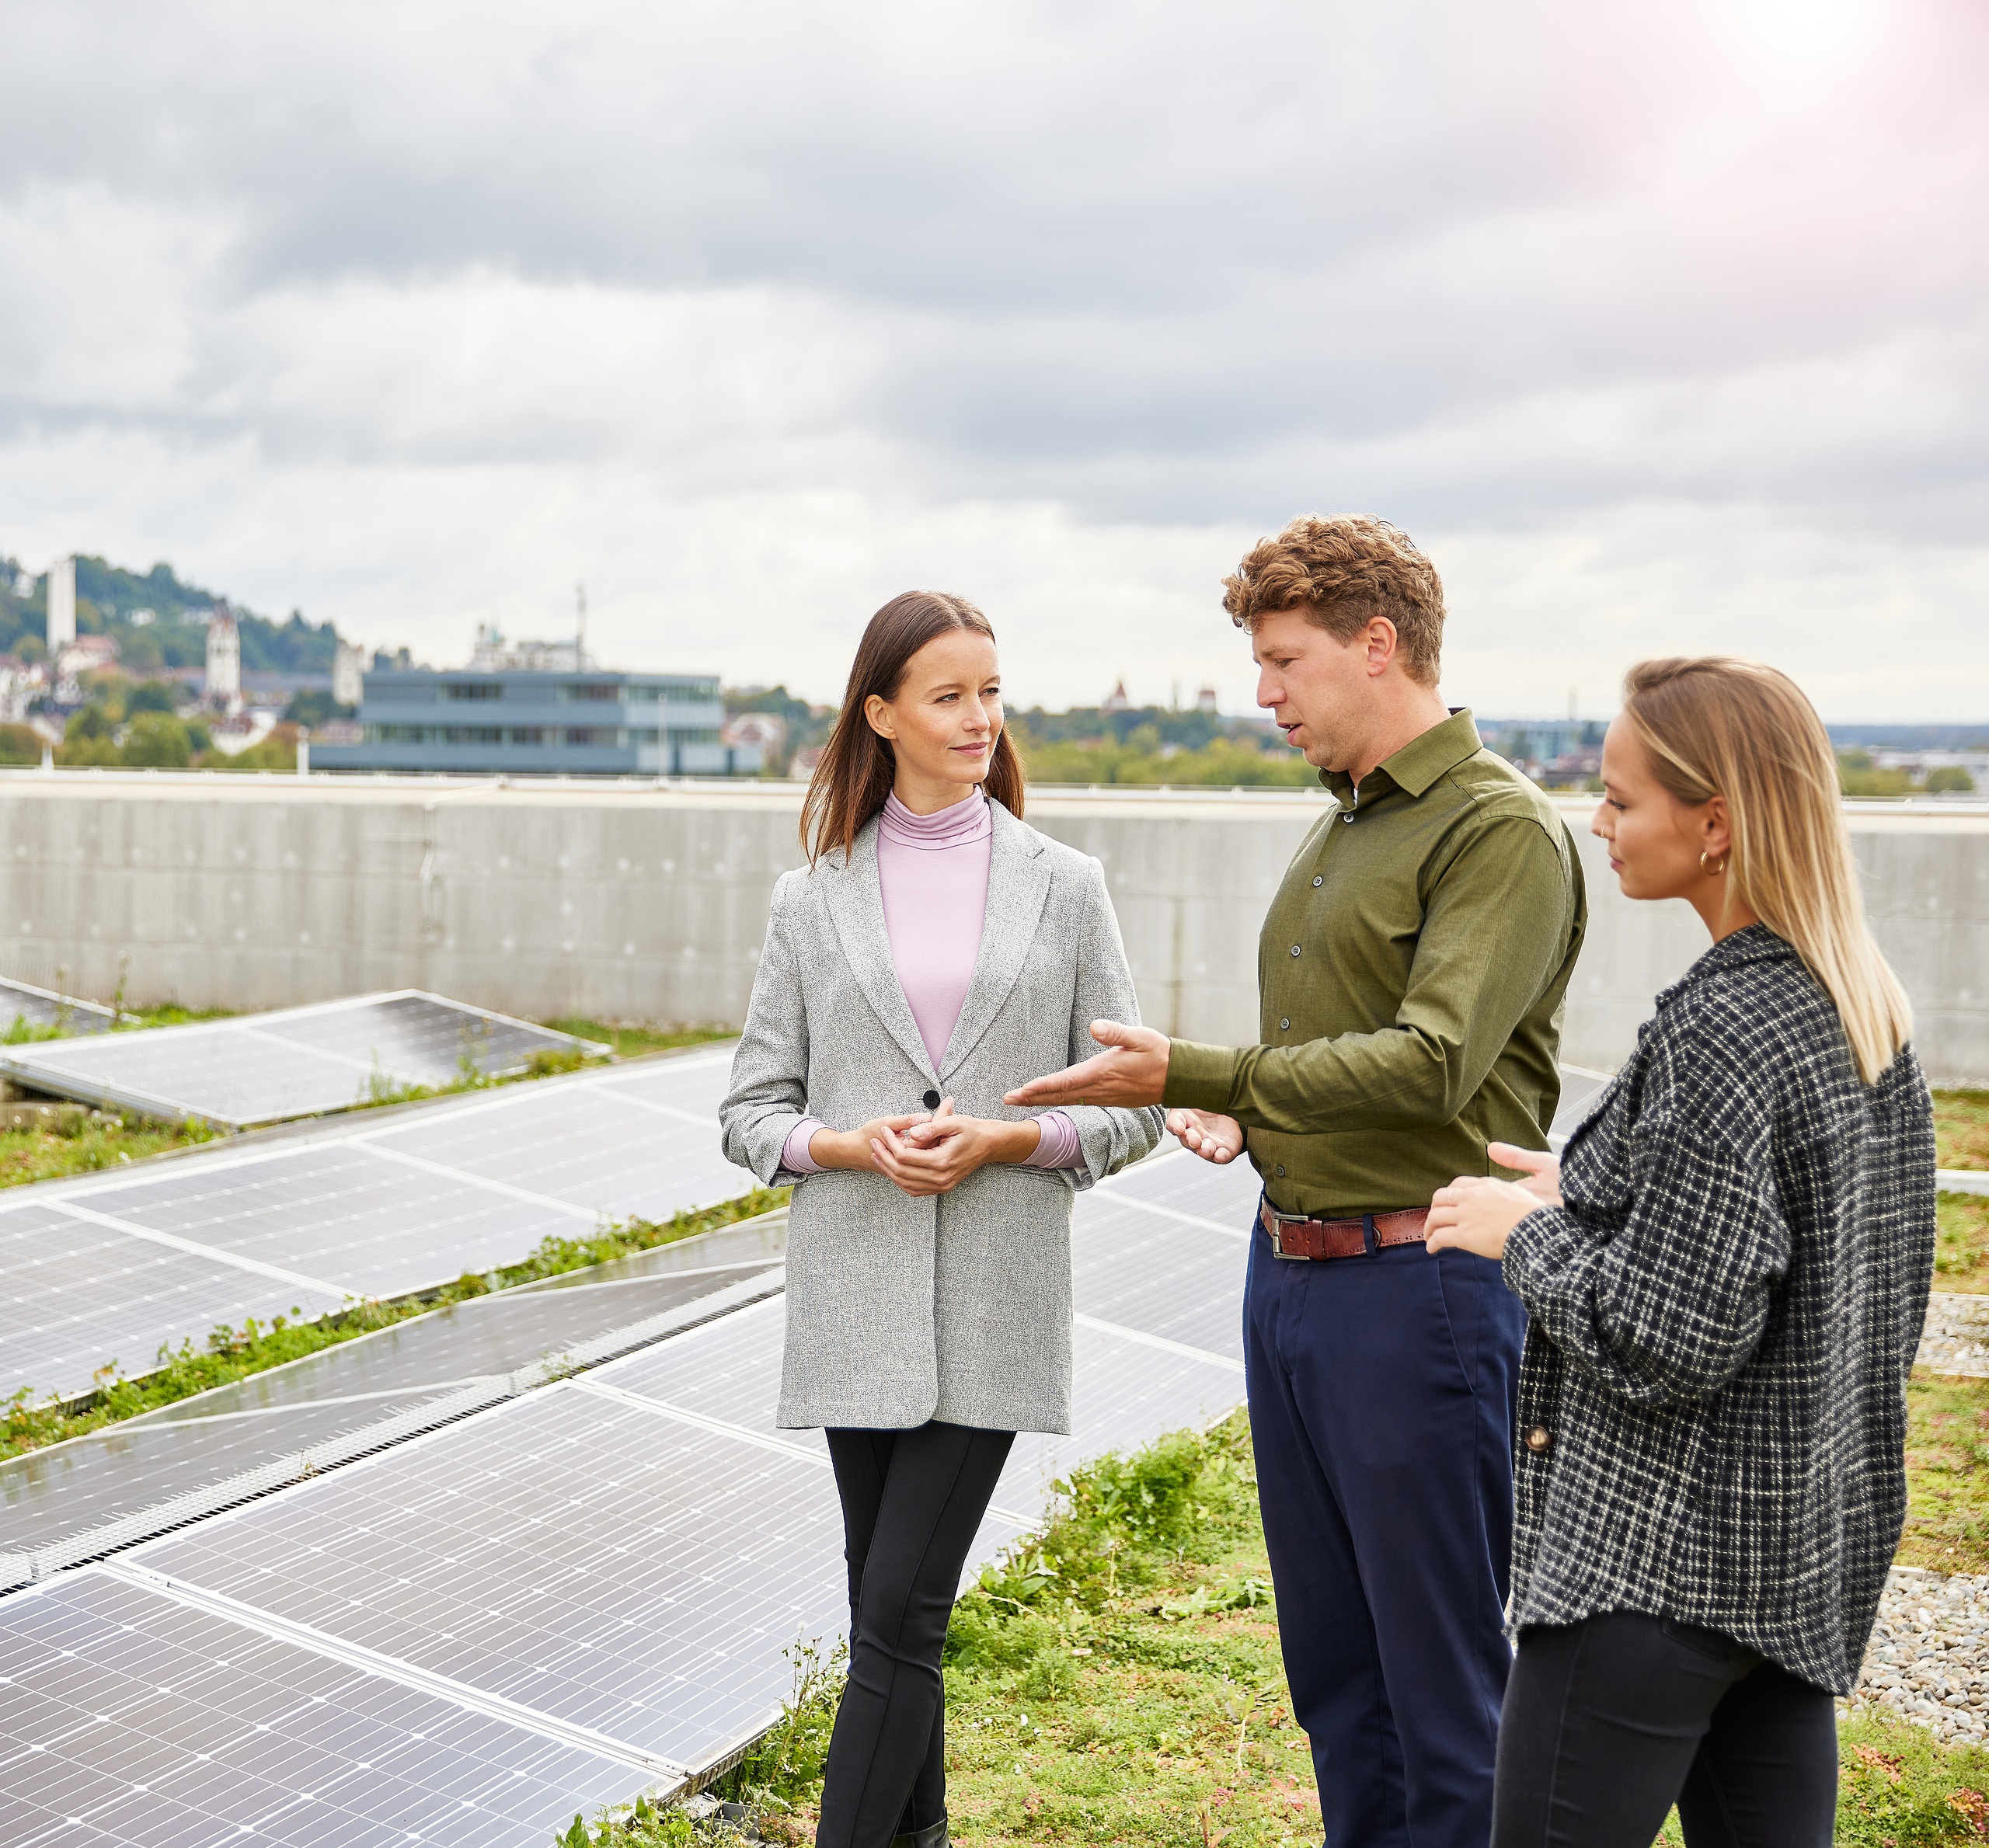 Mitarbeitende auf einem Dach die über die Photovoltaik sprechen 